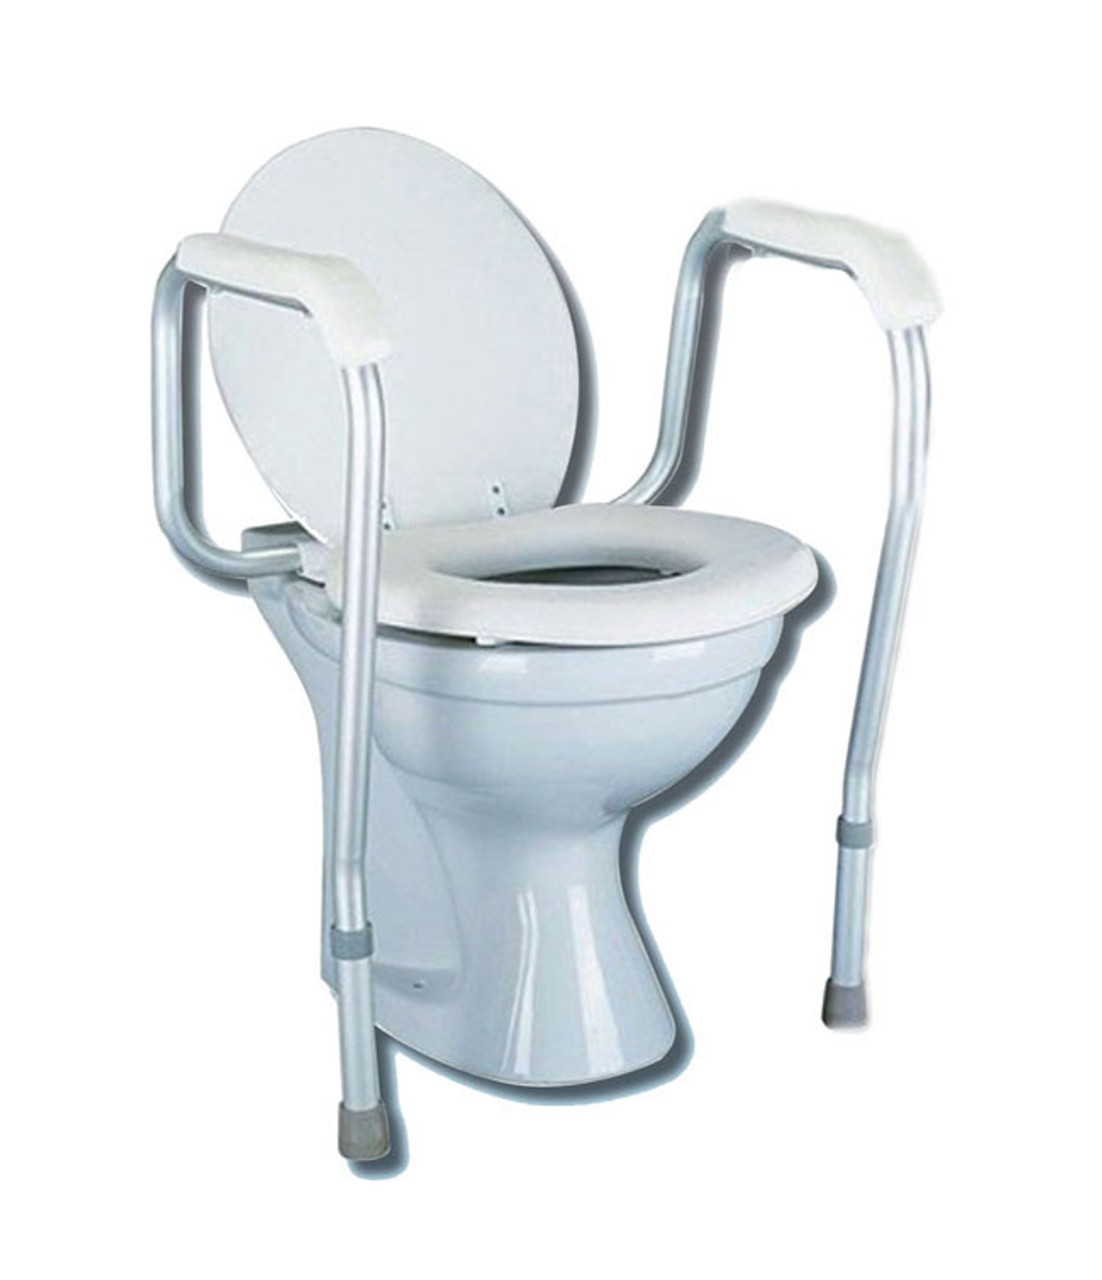 MOBB Health Care MHSTSF Toilet Safety Frame Weight limit 250lbs (MOBB Health Care MHSTSF)